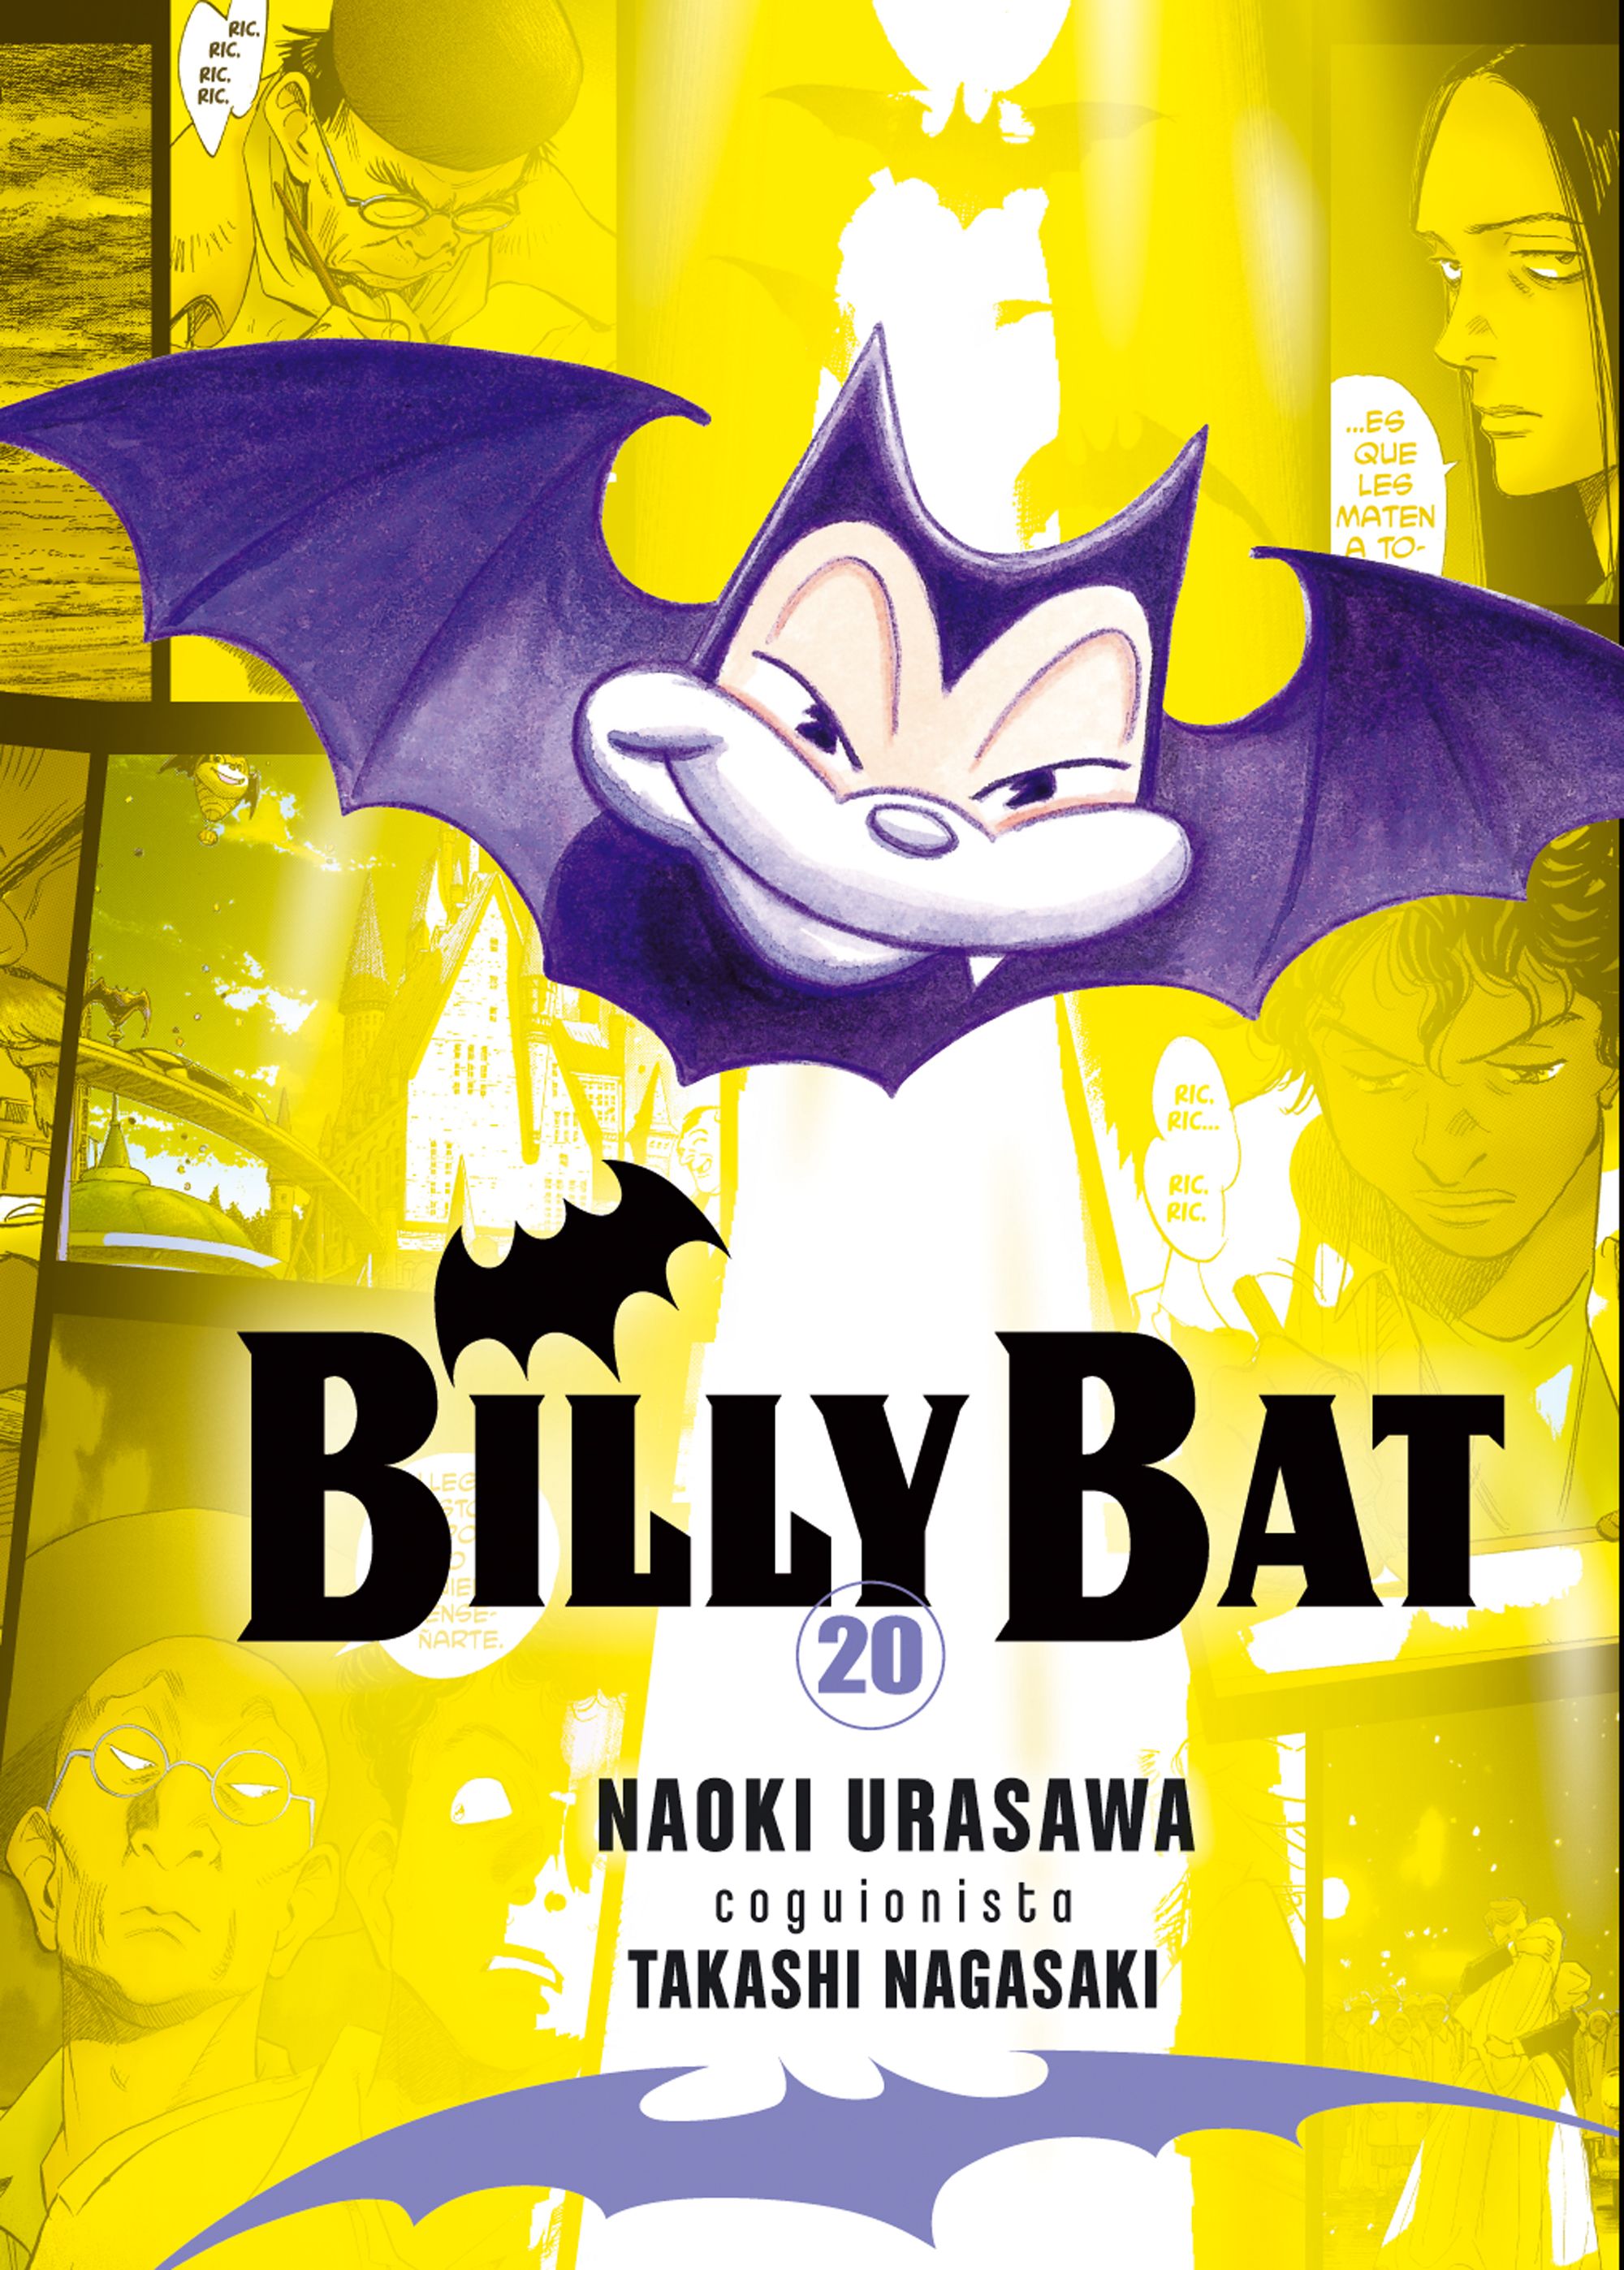 Billy Bat #20 (de 20)